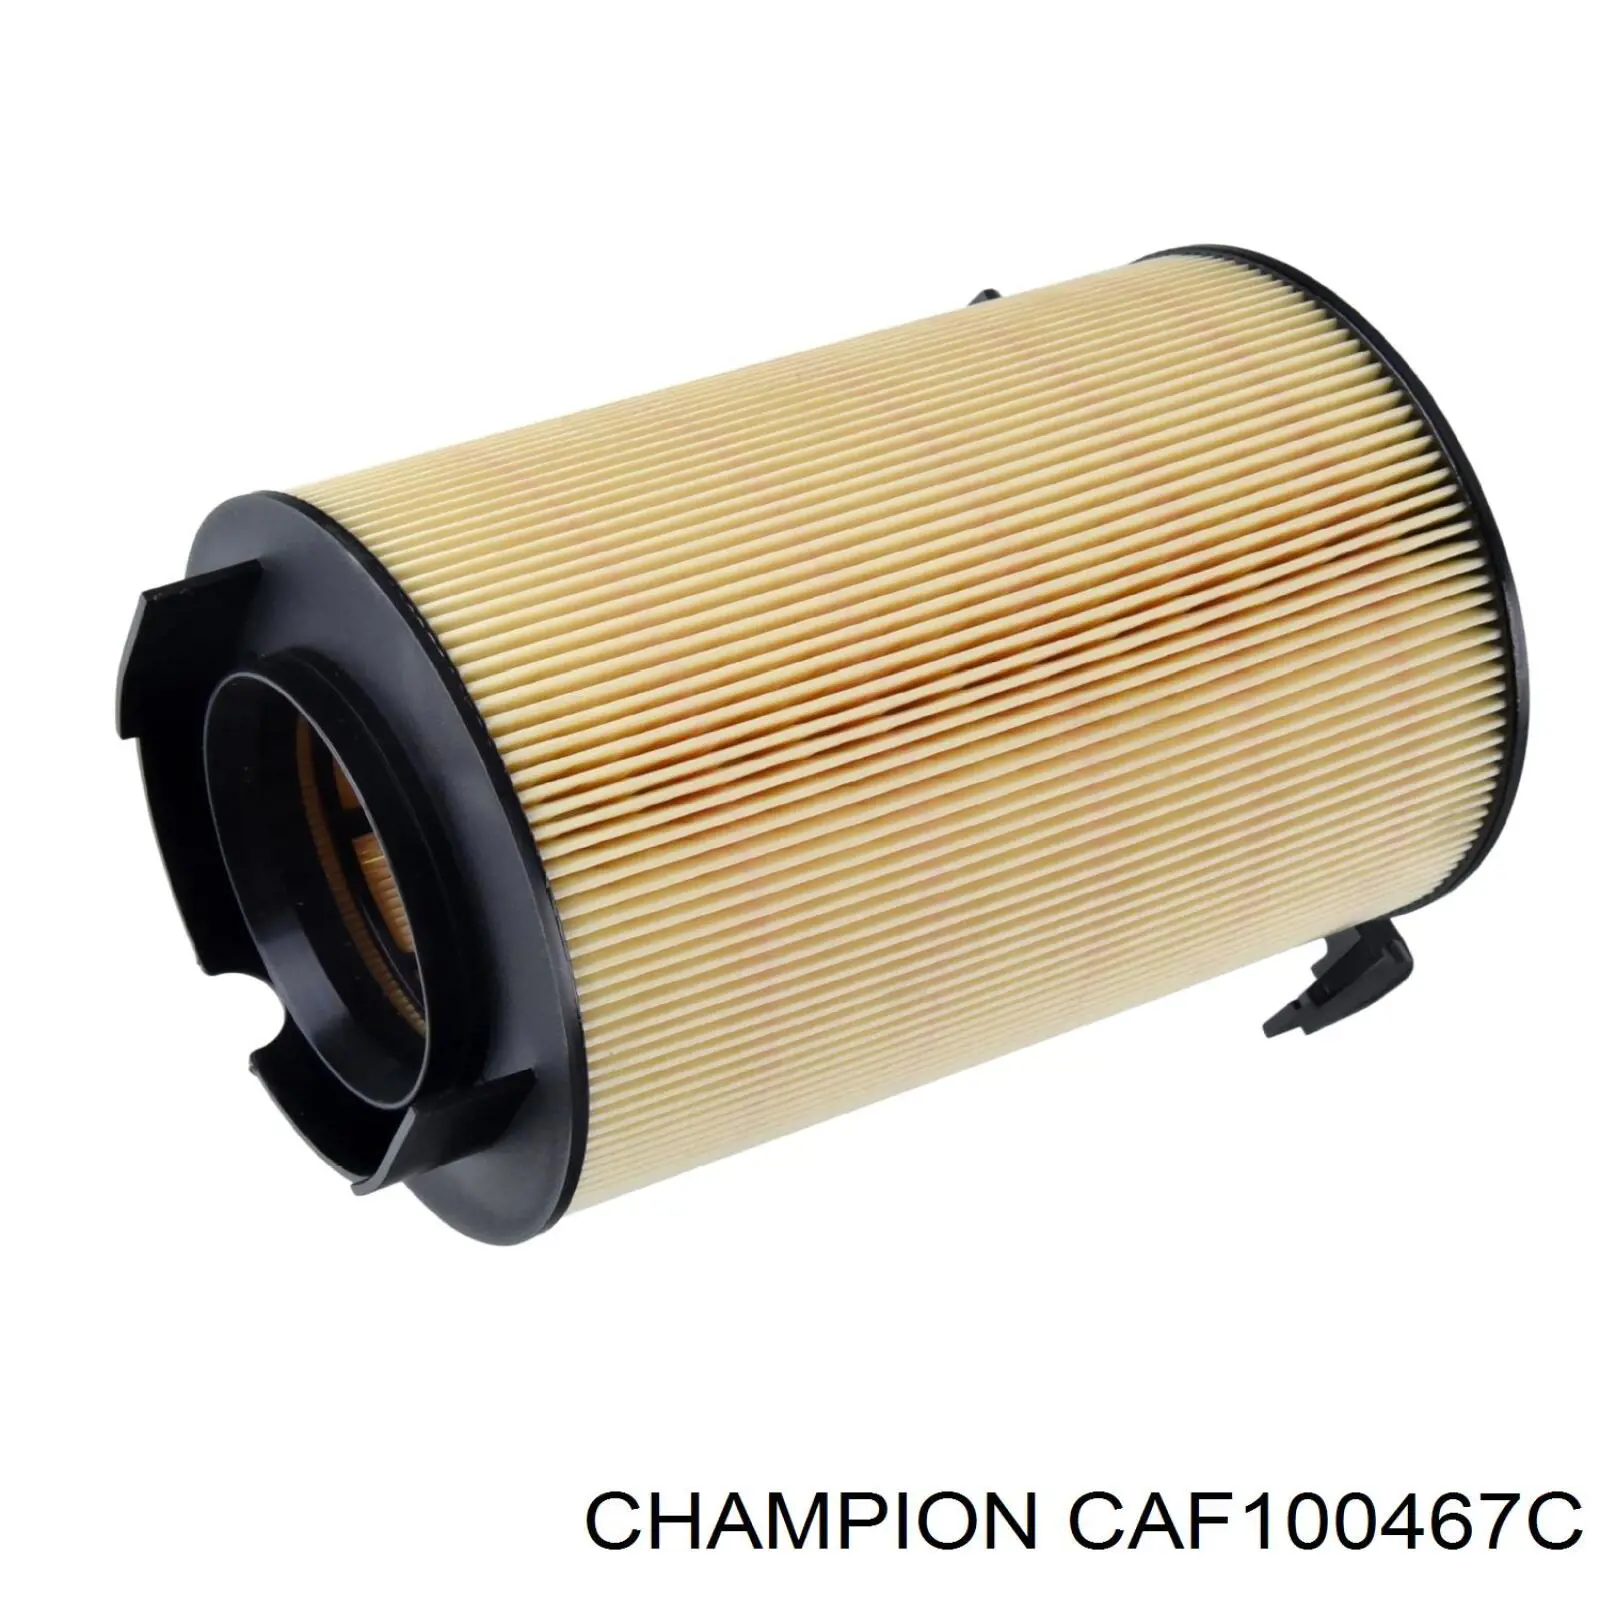 CAF100467C Champion filtro de aire